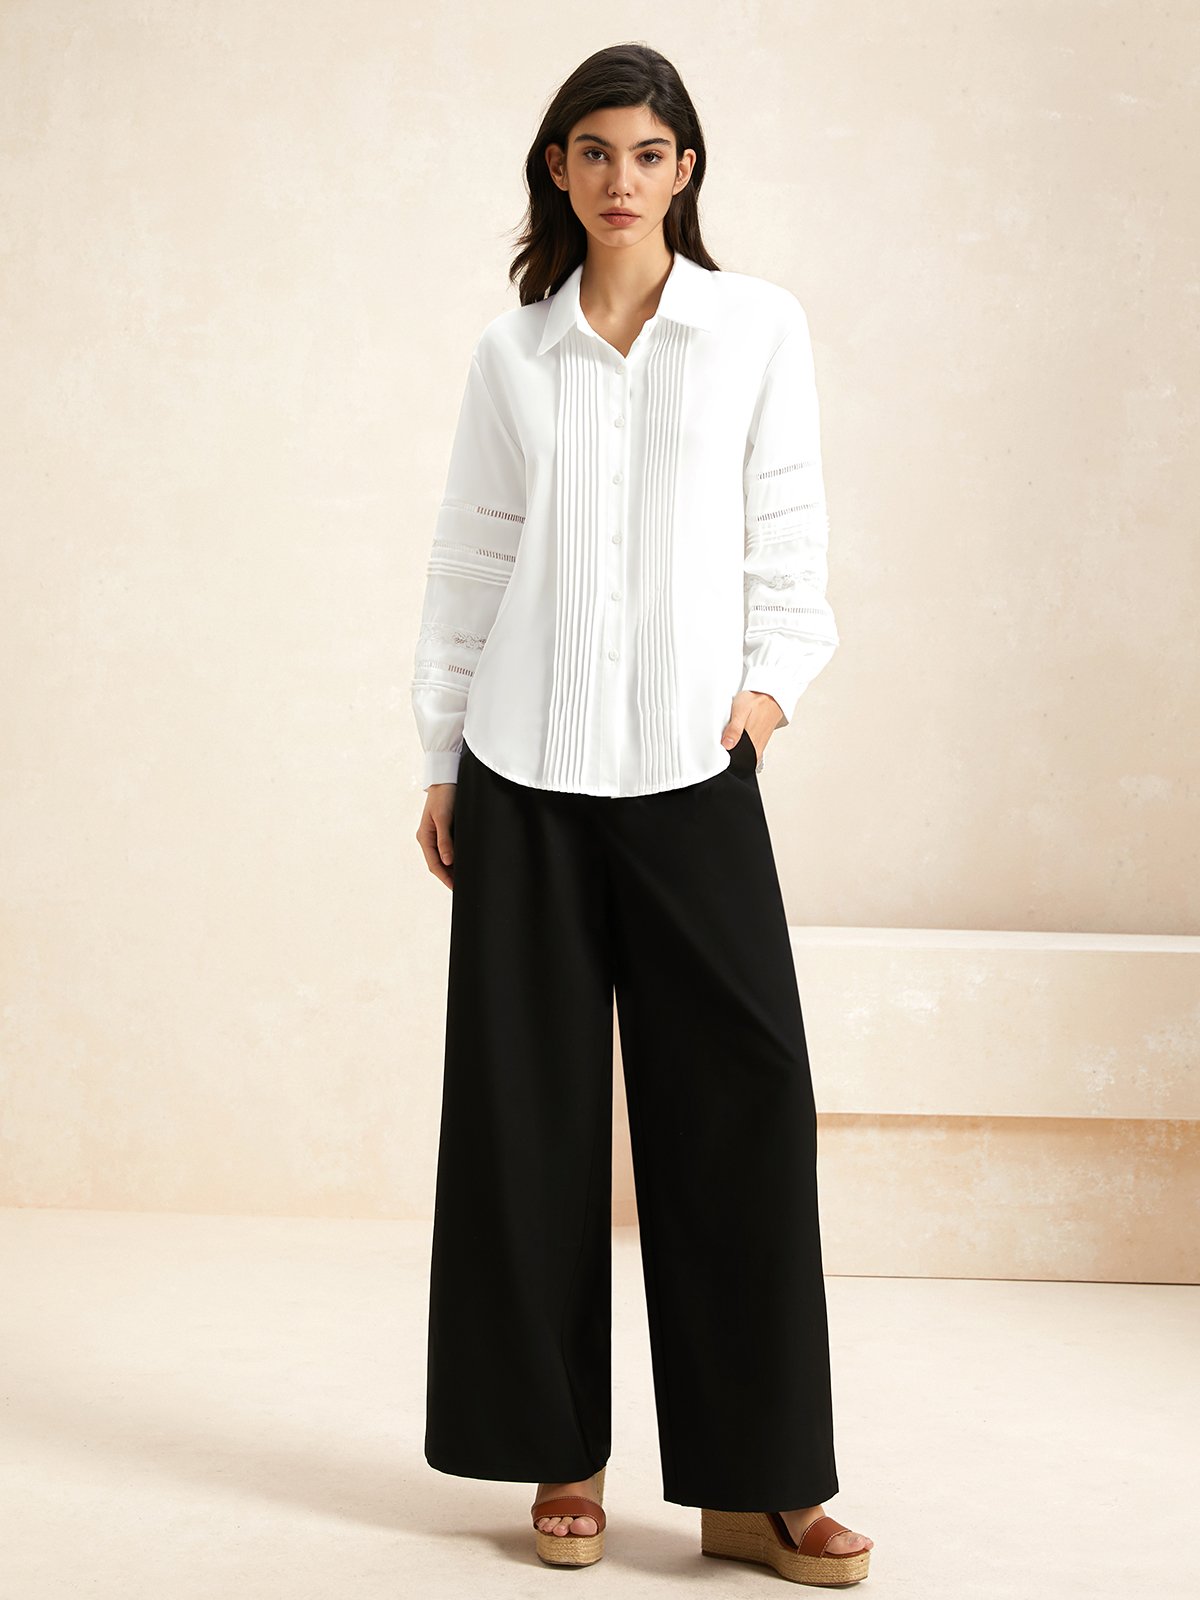 Shirt Collar Long Sleeve Plain Lightweight Loose TUNIC Blouse For Women